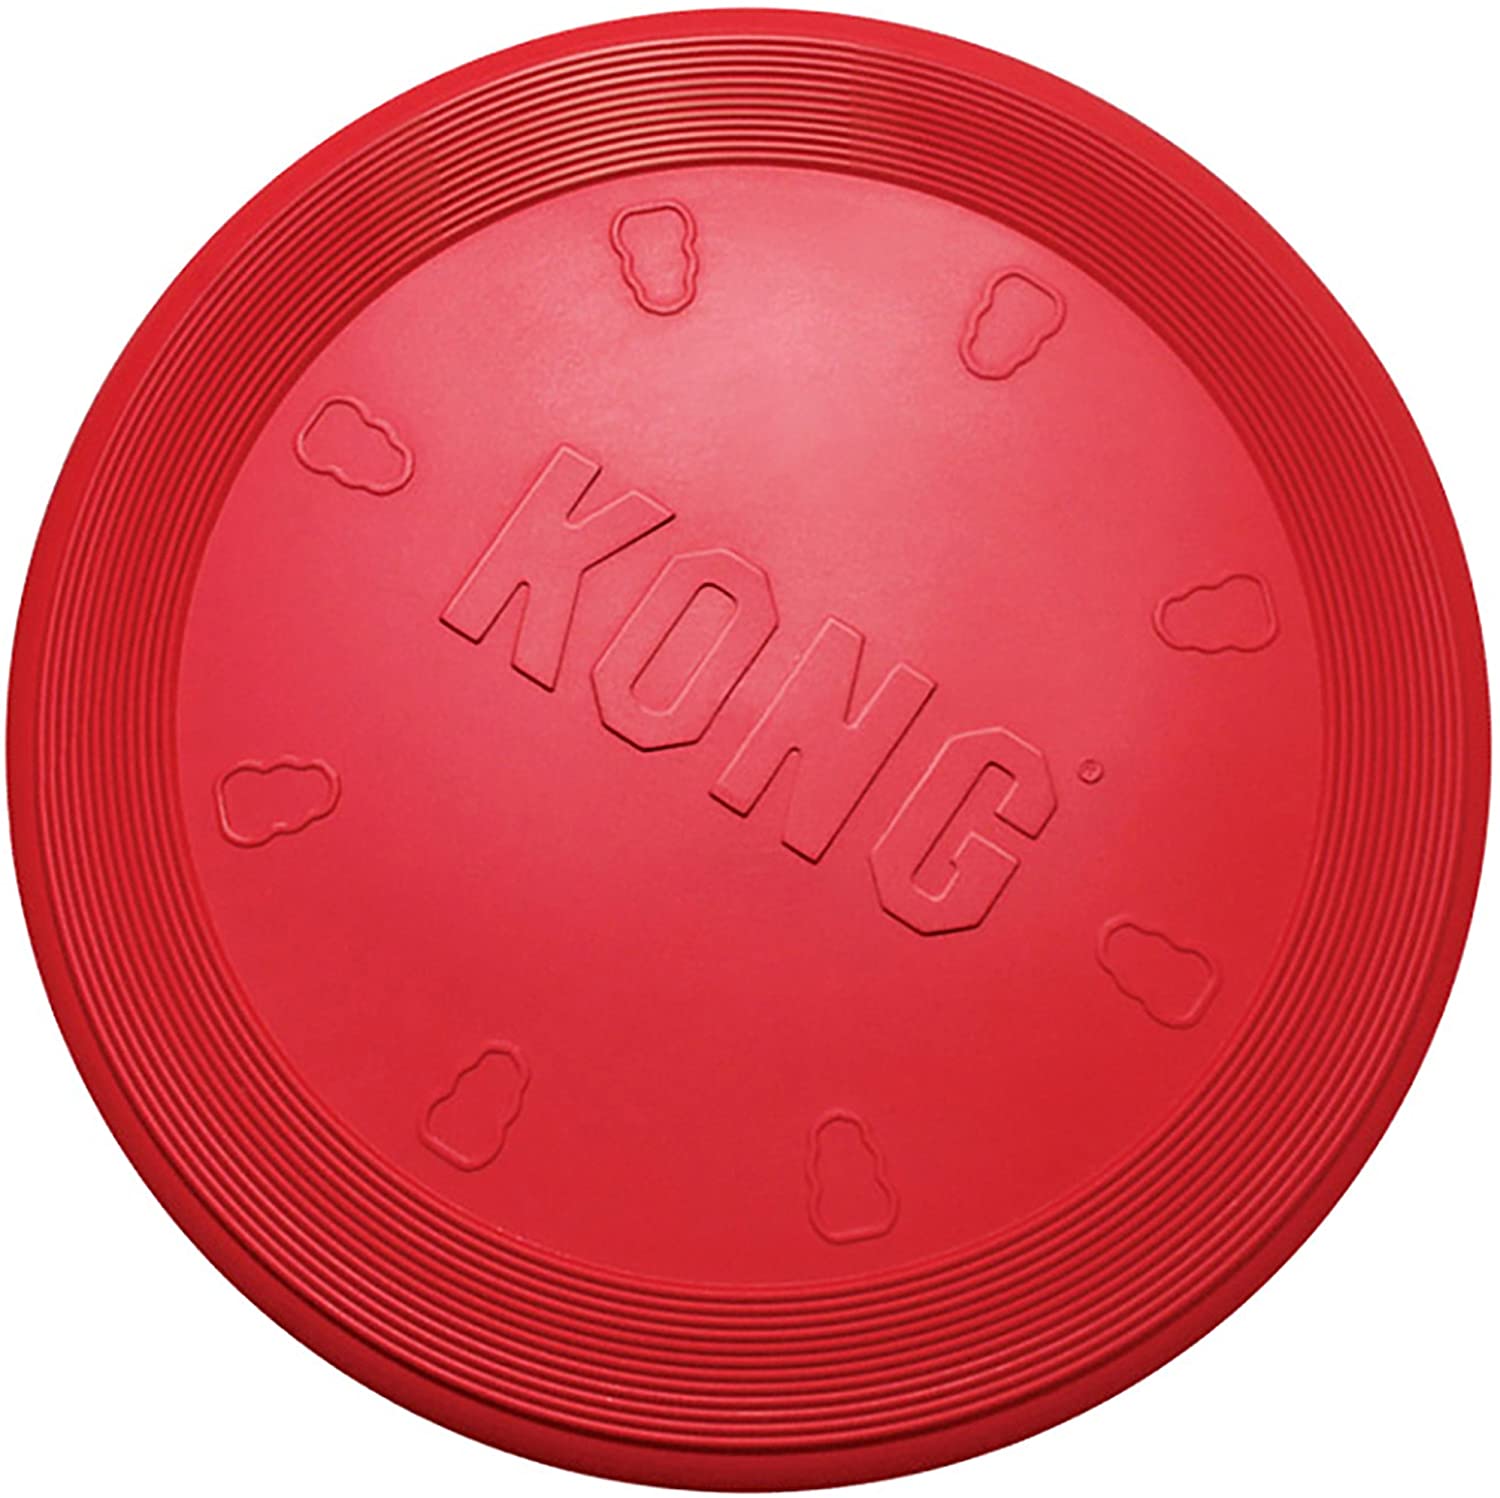  KONG - Flyer - Frisbee de caucho resistente - Raza pequeña 